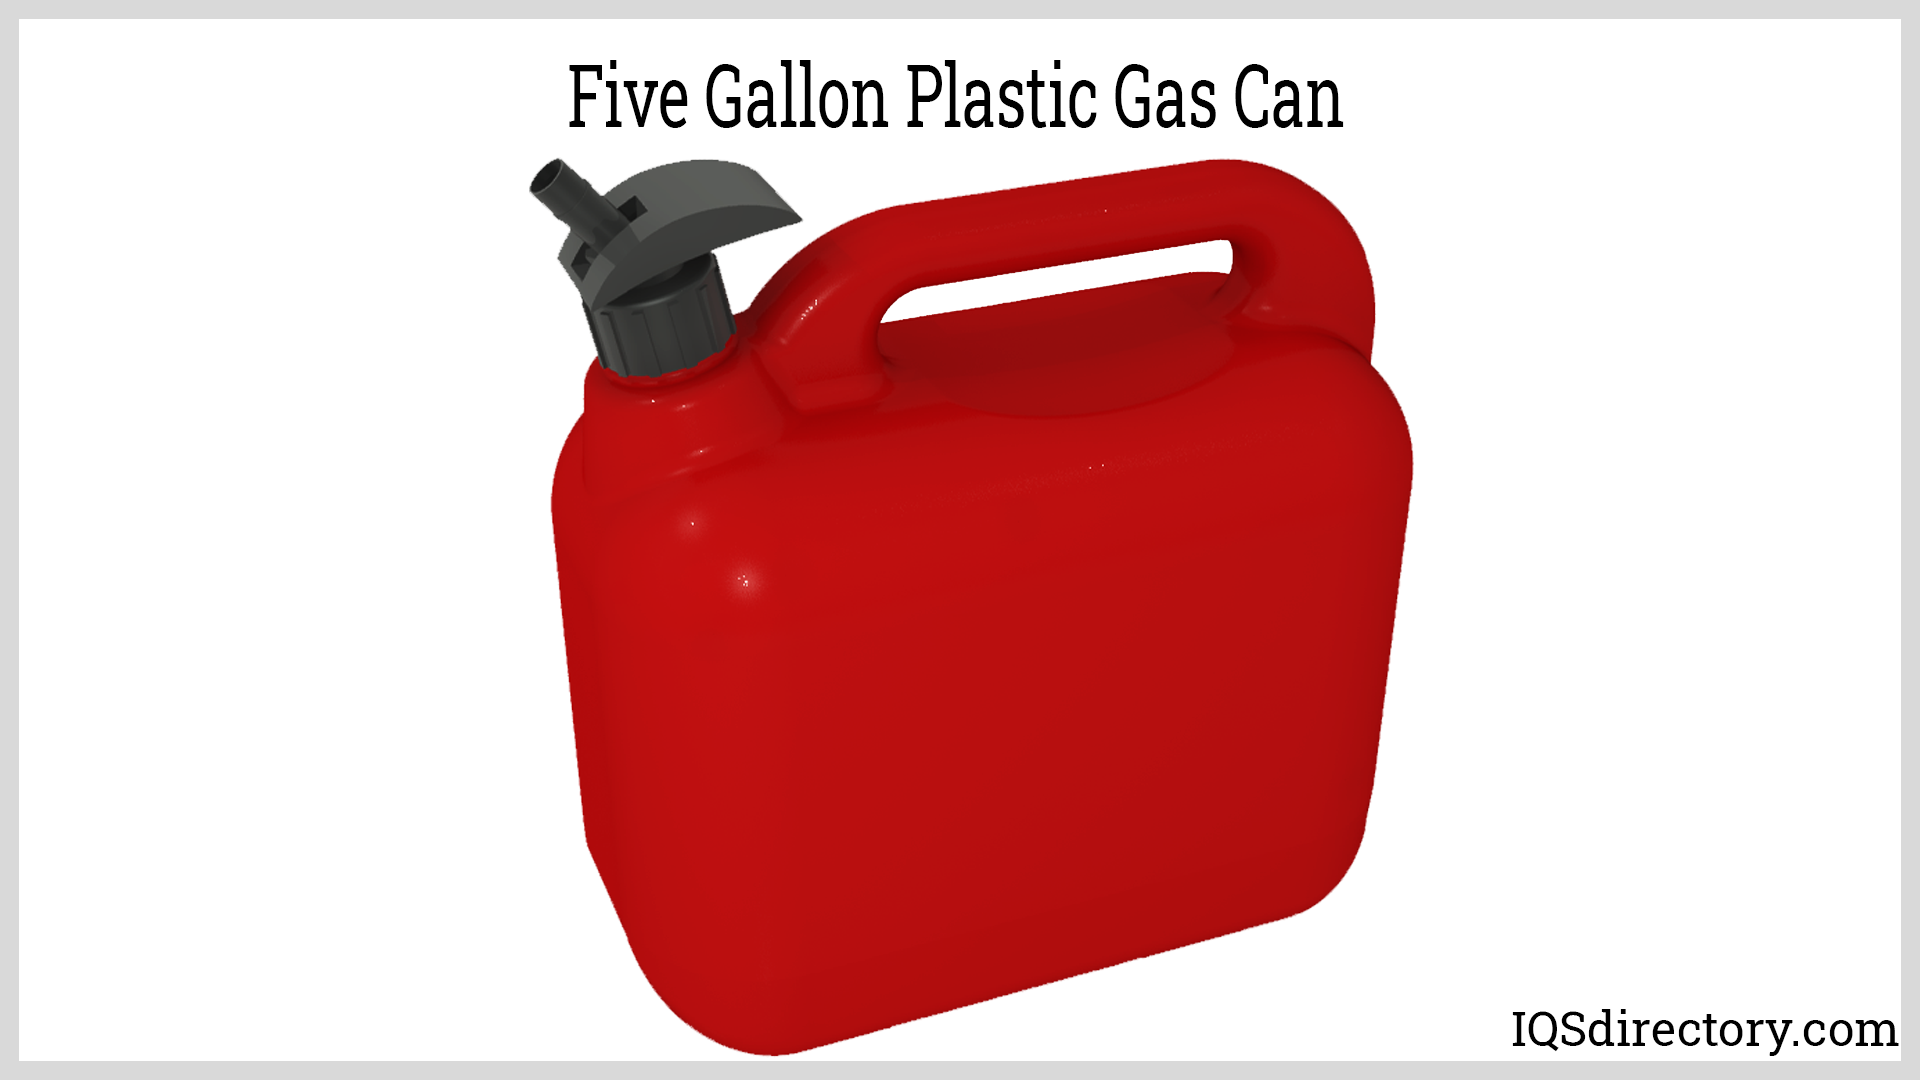 Five Gallon Plastic Gas Can